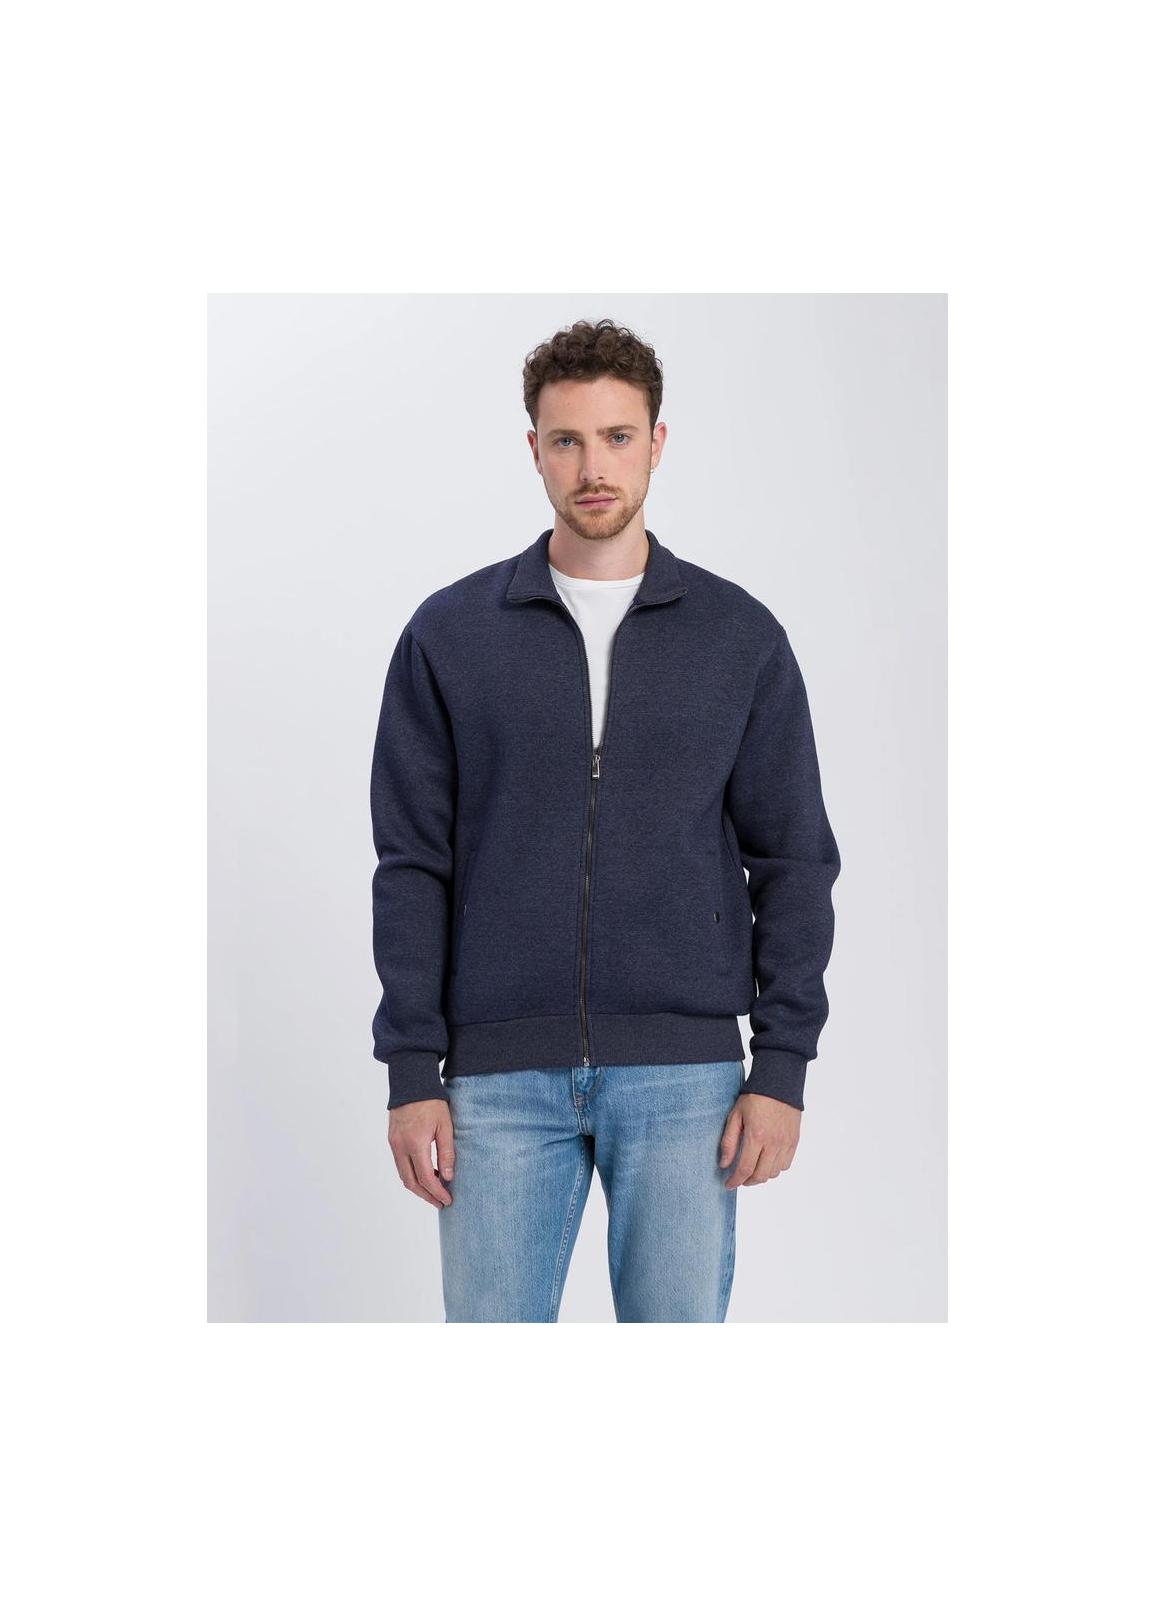 Cross Jeans® Sweatshirt Zip - Navy Melange (197)